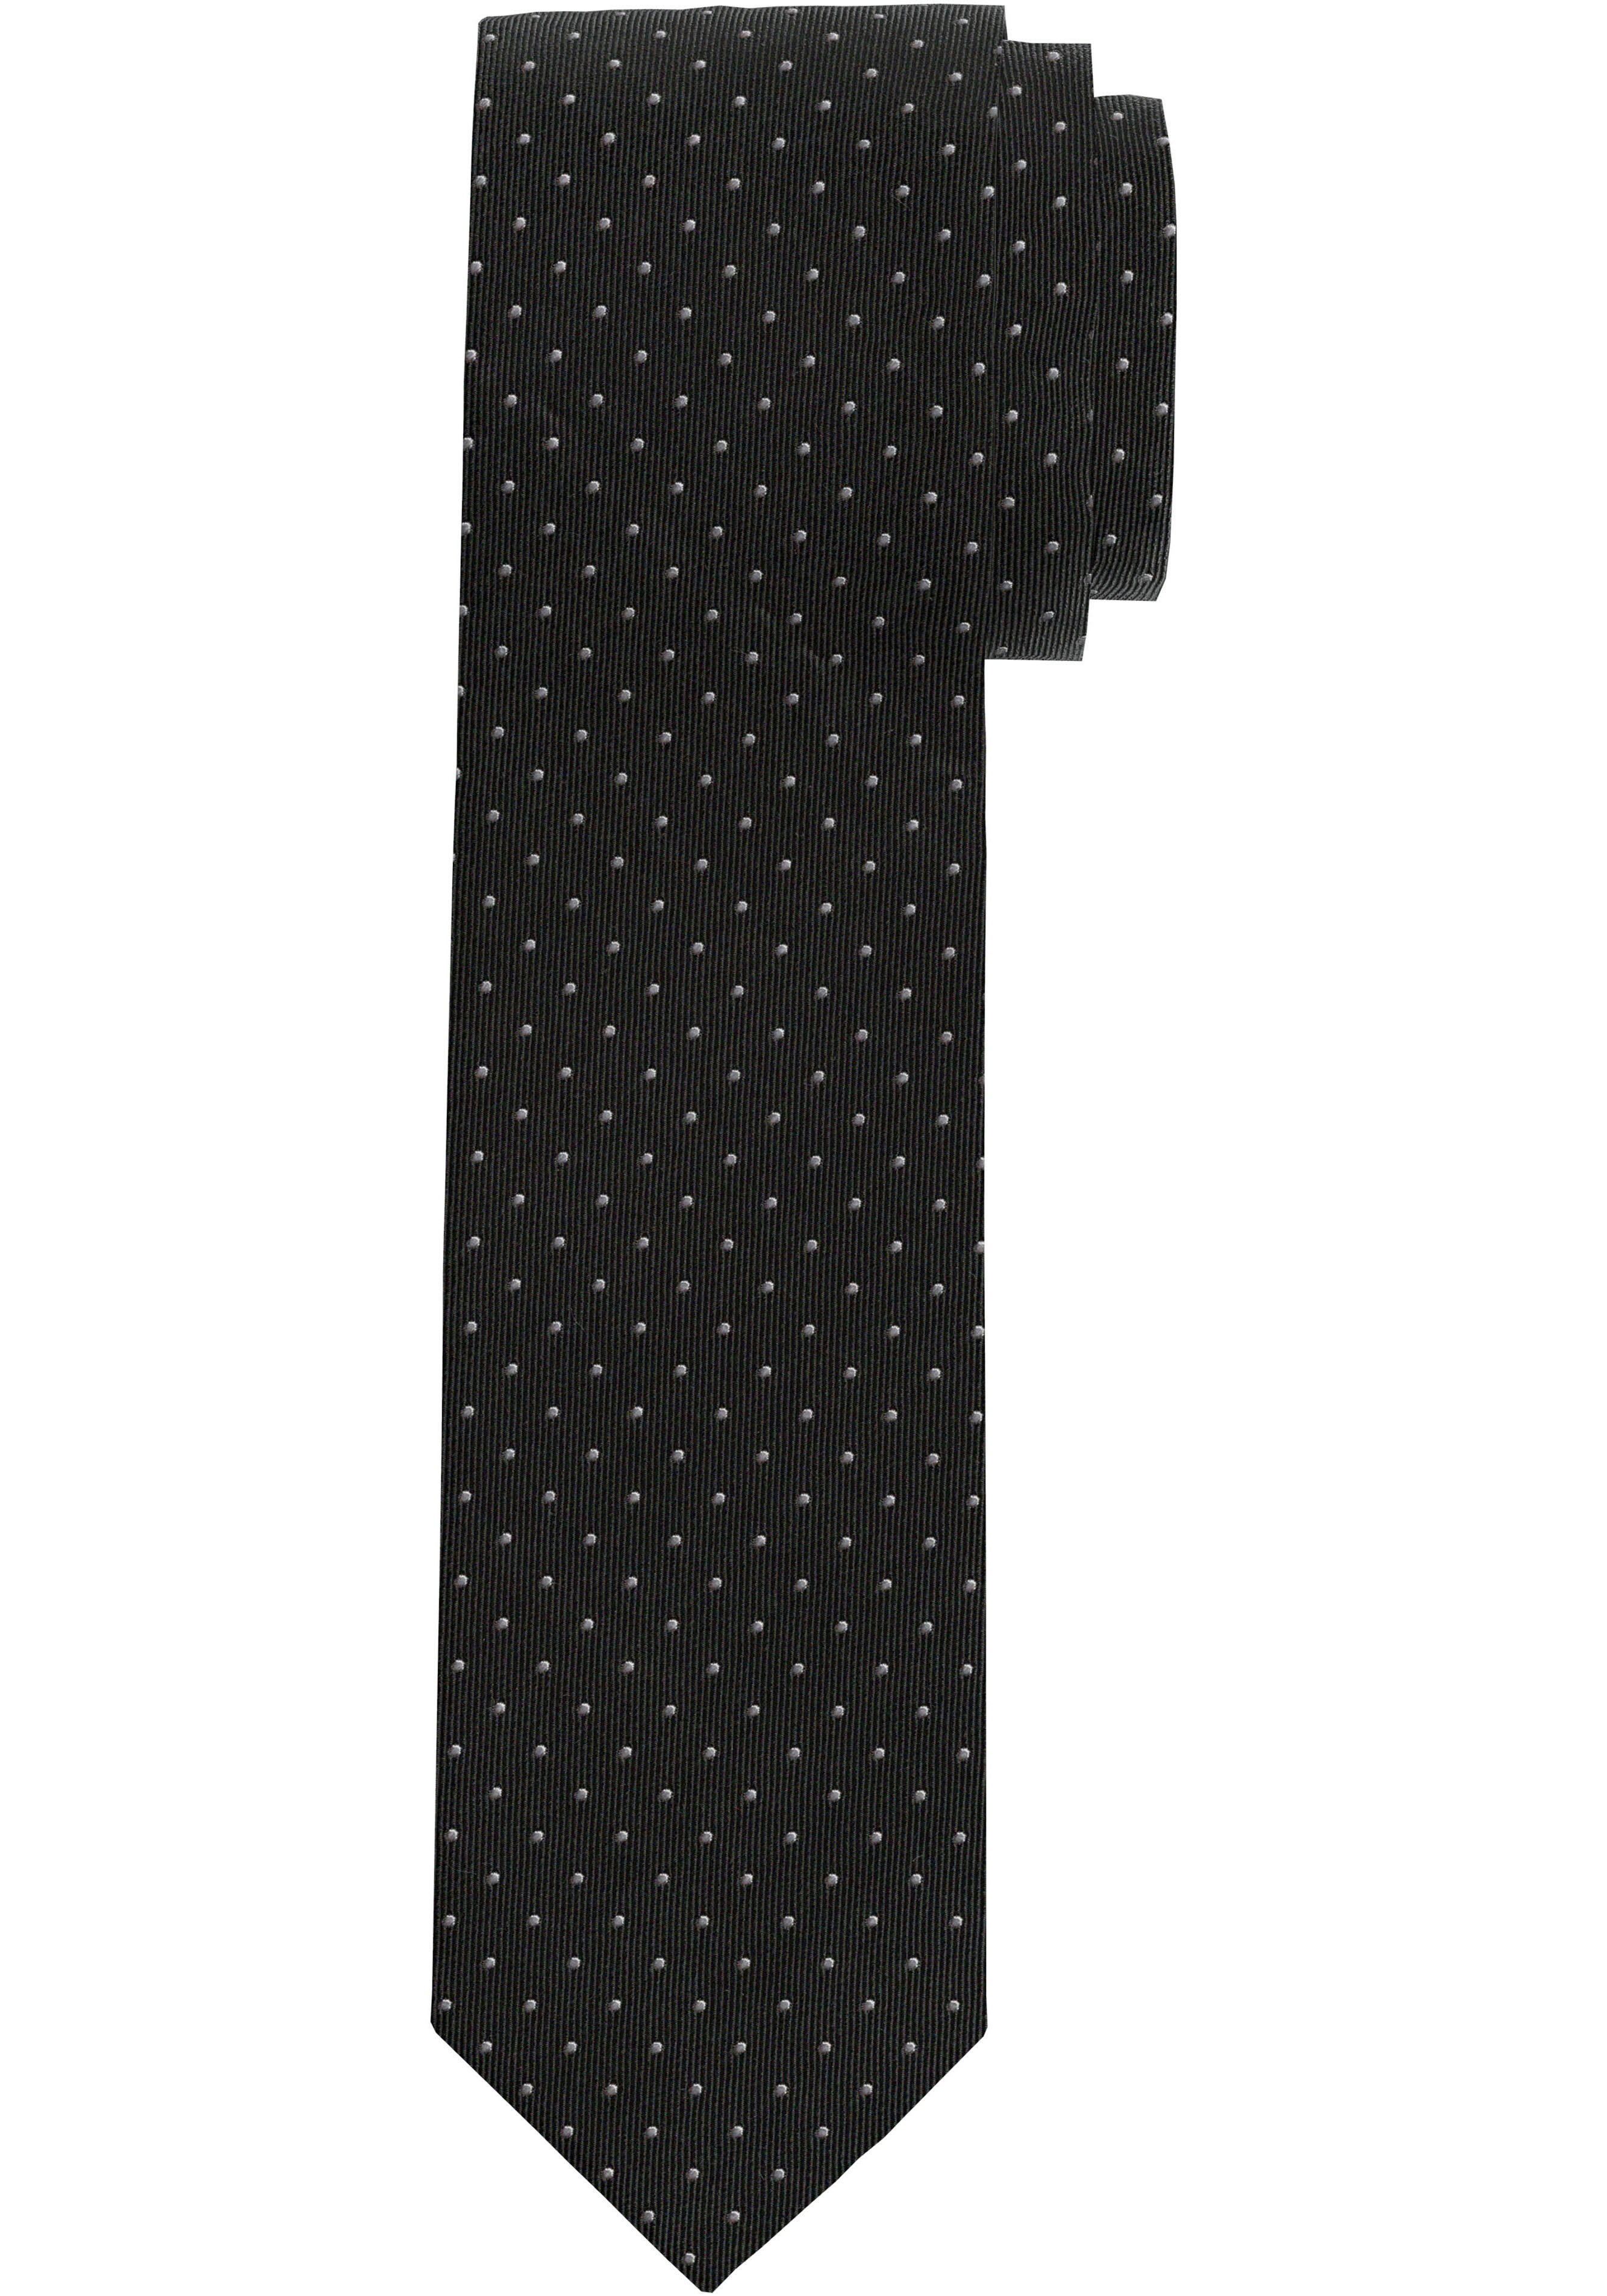 OLYMP Krawatte schwarz Seidenkrawatte